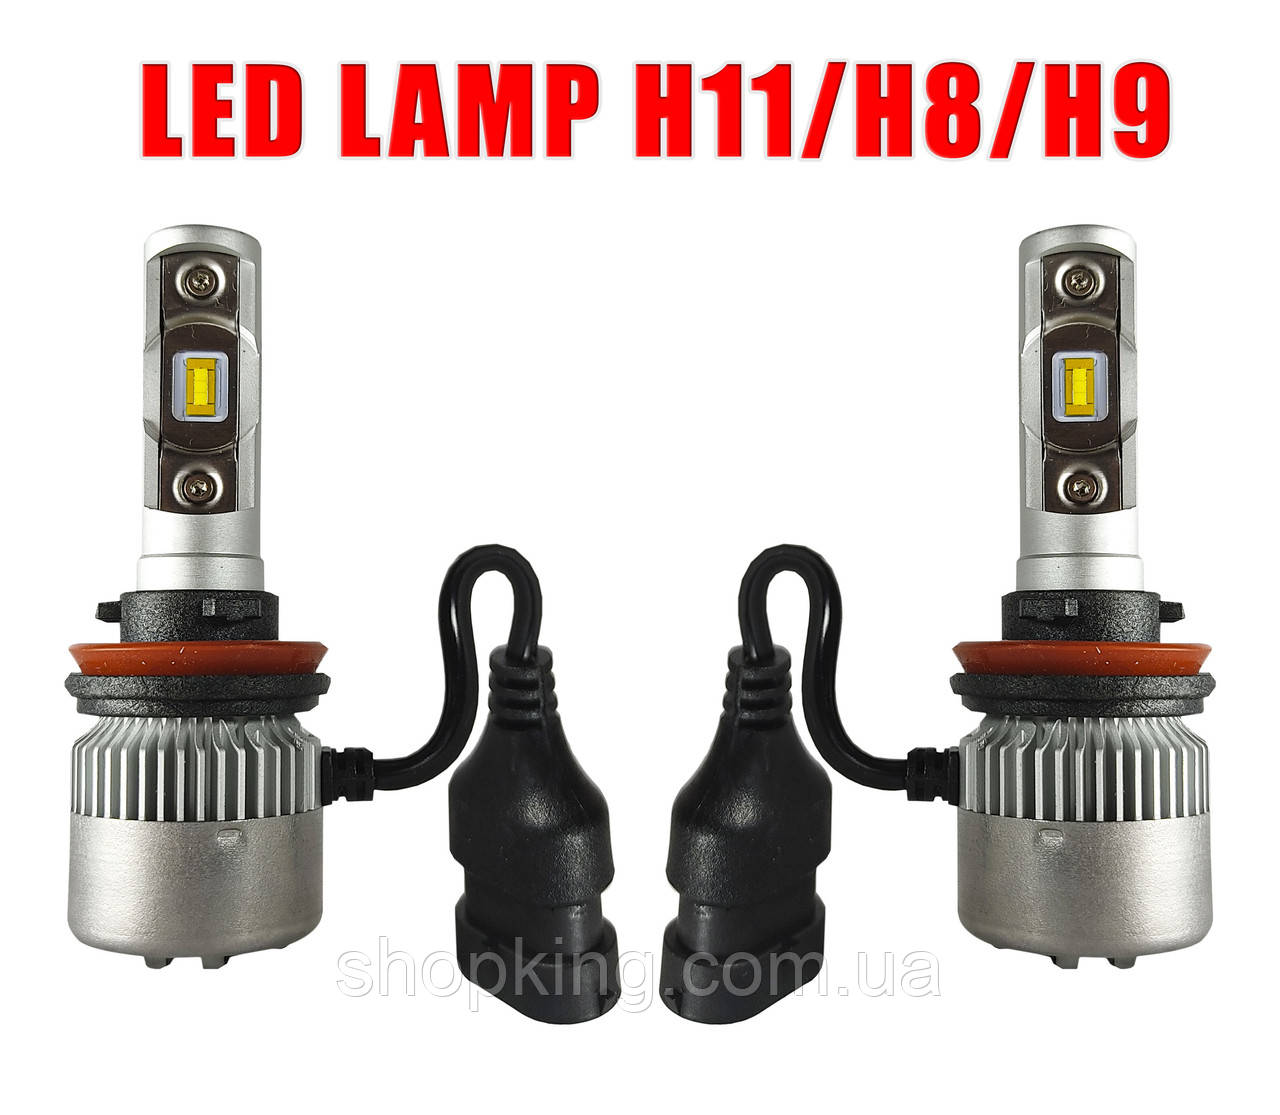 LED лампи H4 6000K 4000Lm. Світлодіодні лампи. 12-24V \ SVS S1, H/L. Тип охолодження - радіатор.Гарантія.